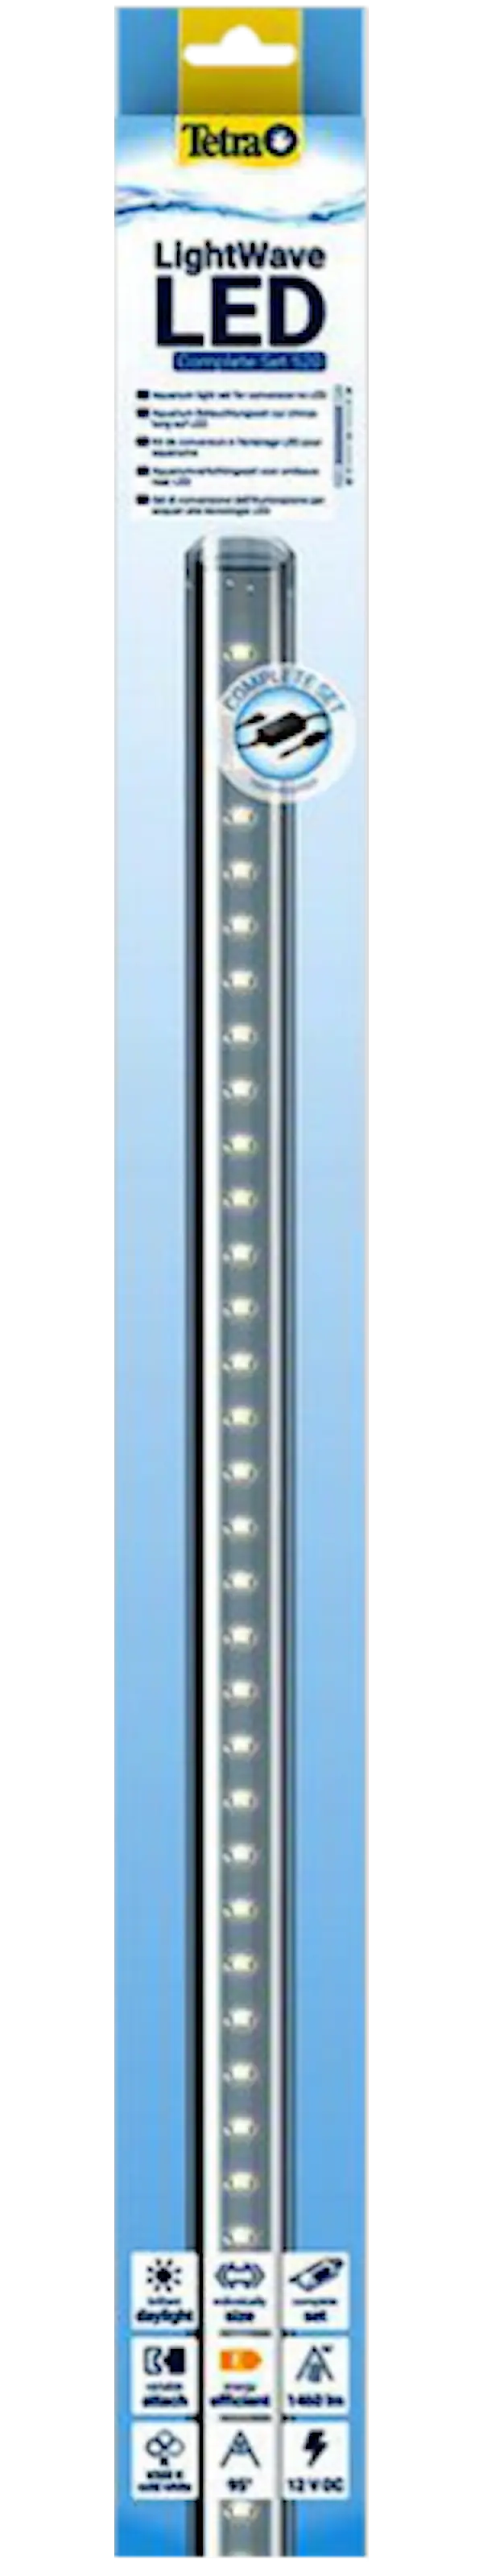 LightWave LED Single Light, 430 - 510 mm